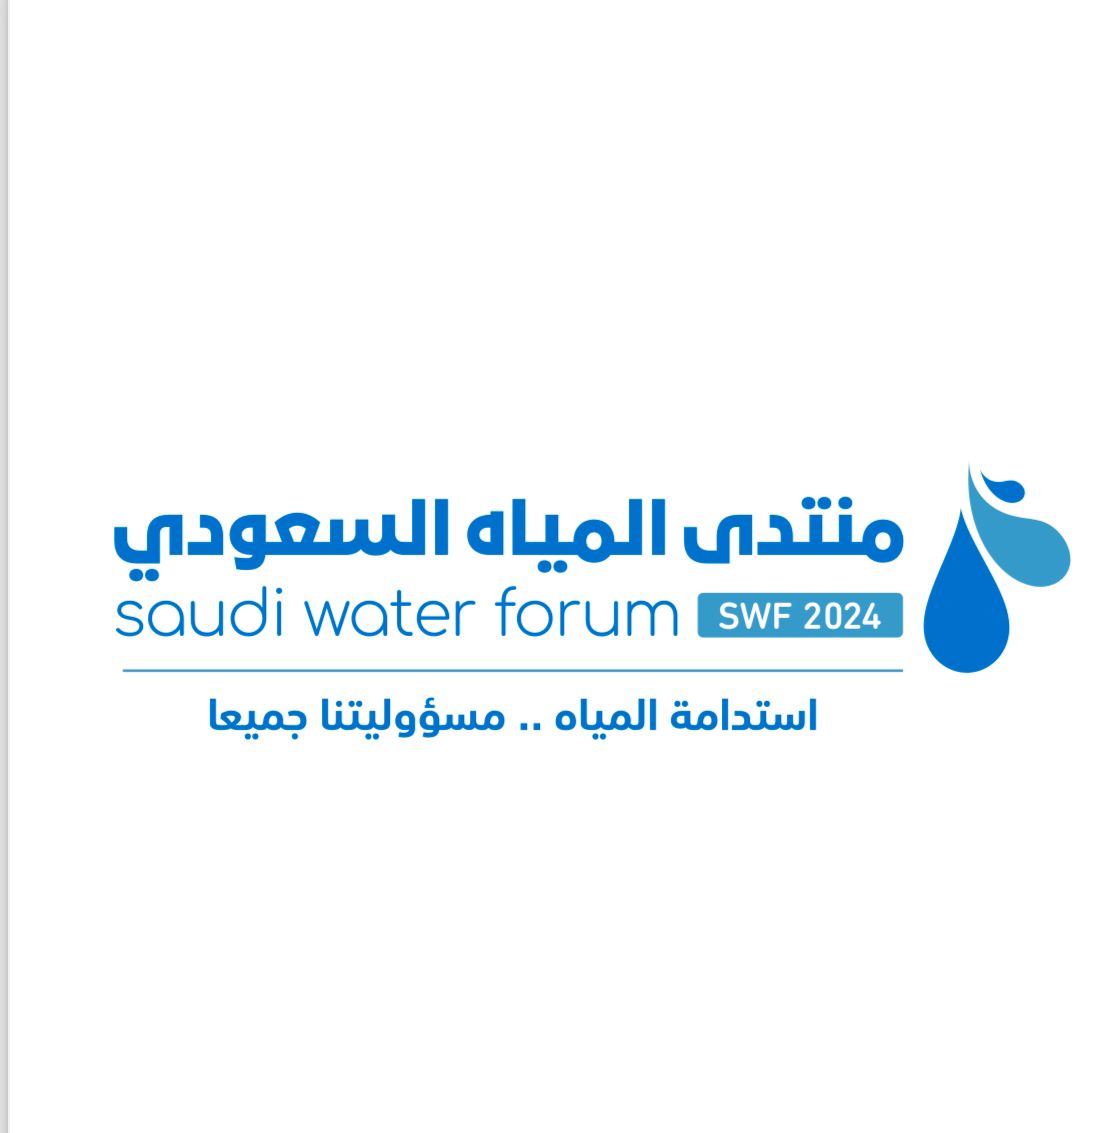 وزير البيئة يفتتح أعمال منتدى المياه السعودي غدًا بالرياض لمناقشة قضايا استدامة المياه